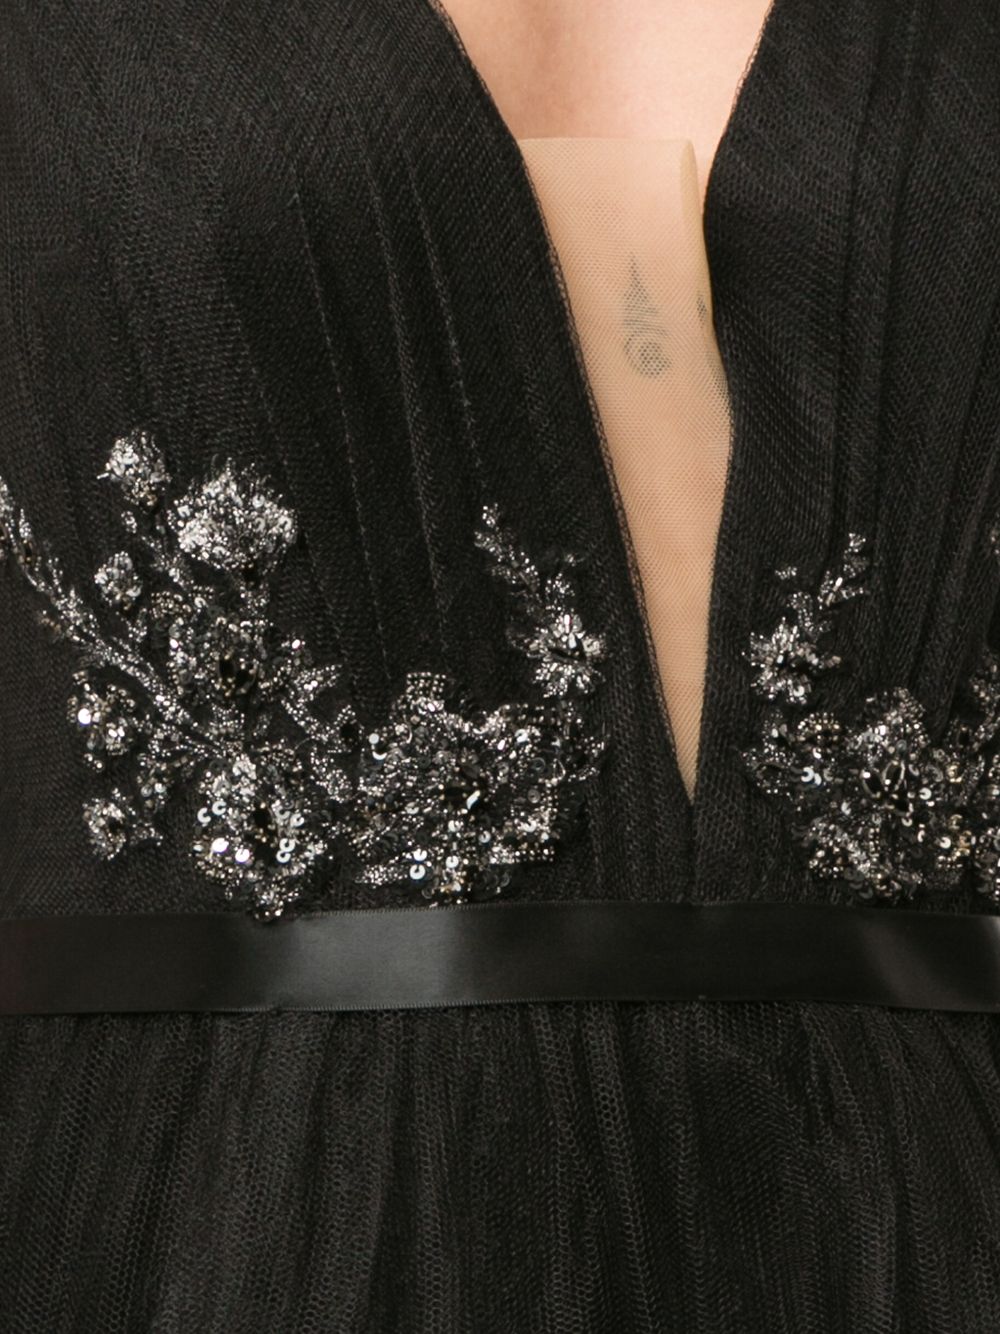 фото Marchesa notte платье асимметричного кроя с v-образным вырезом и пайетками